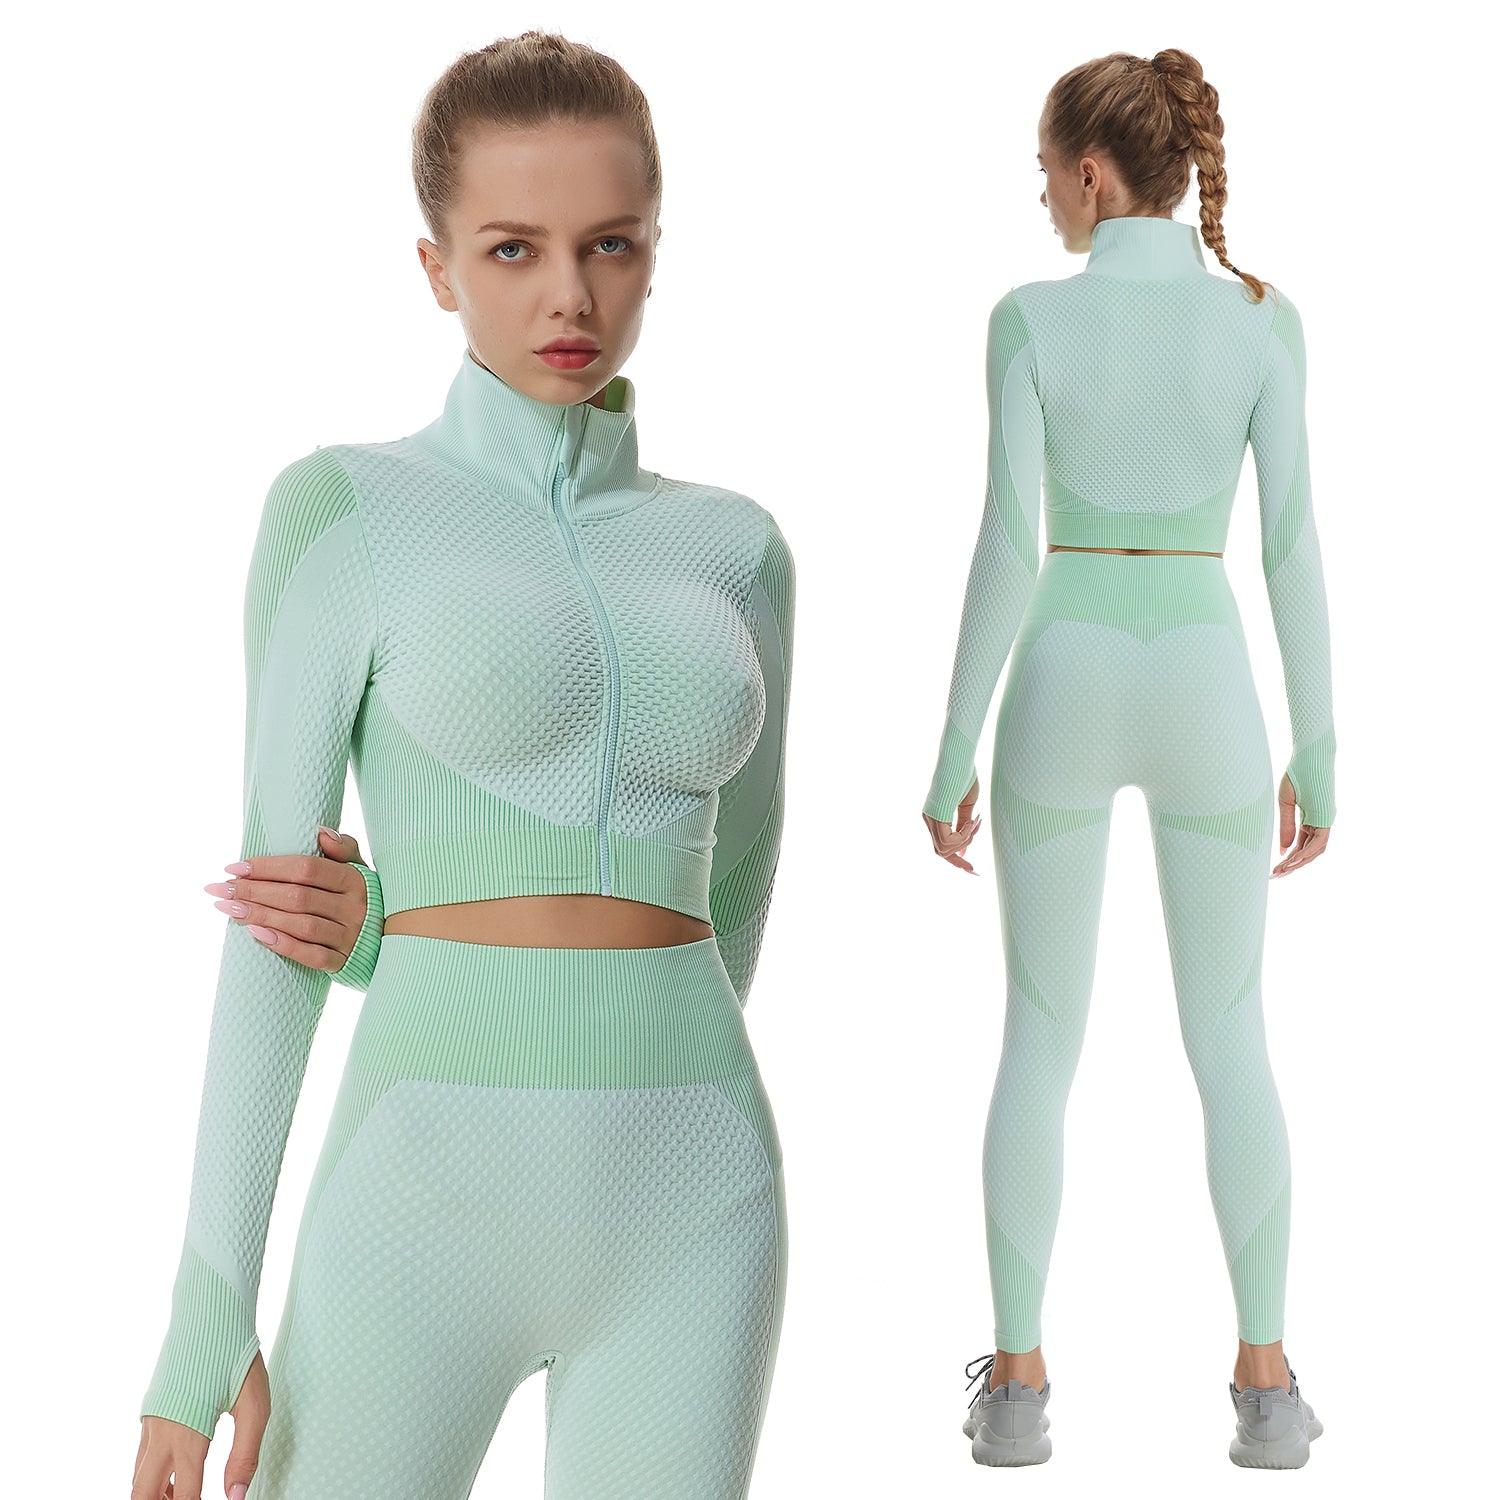 Seamless Yoga Set Women Zippers Long Sleeve Crop Shirt High Waist